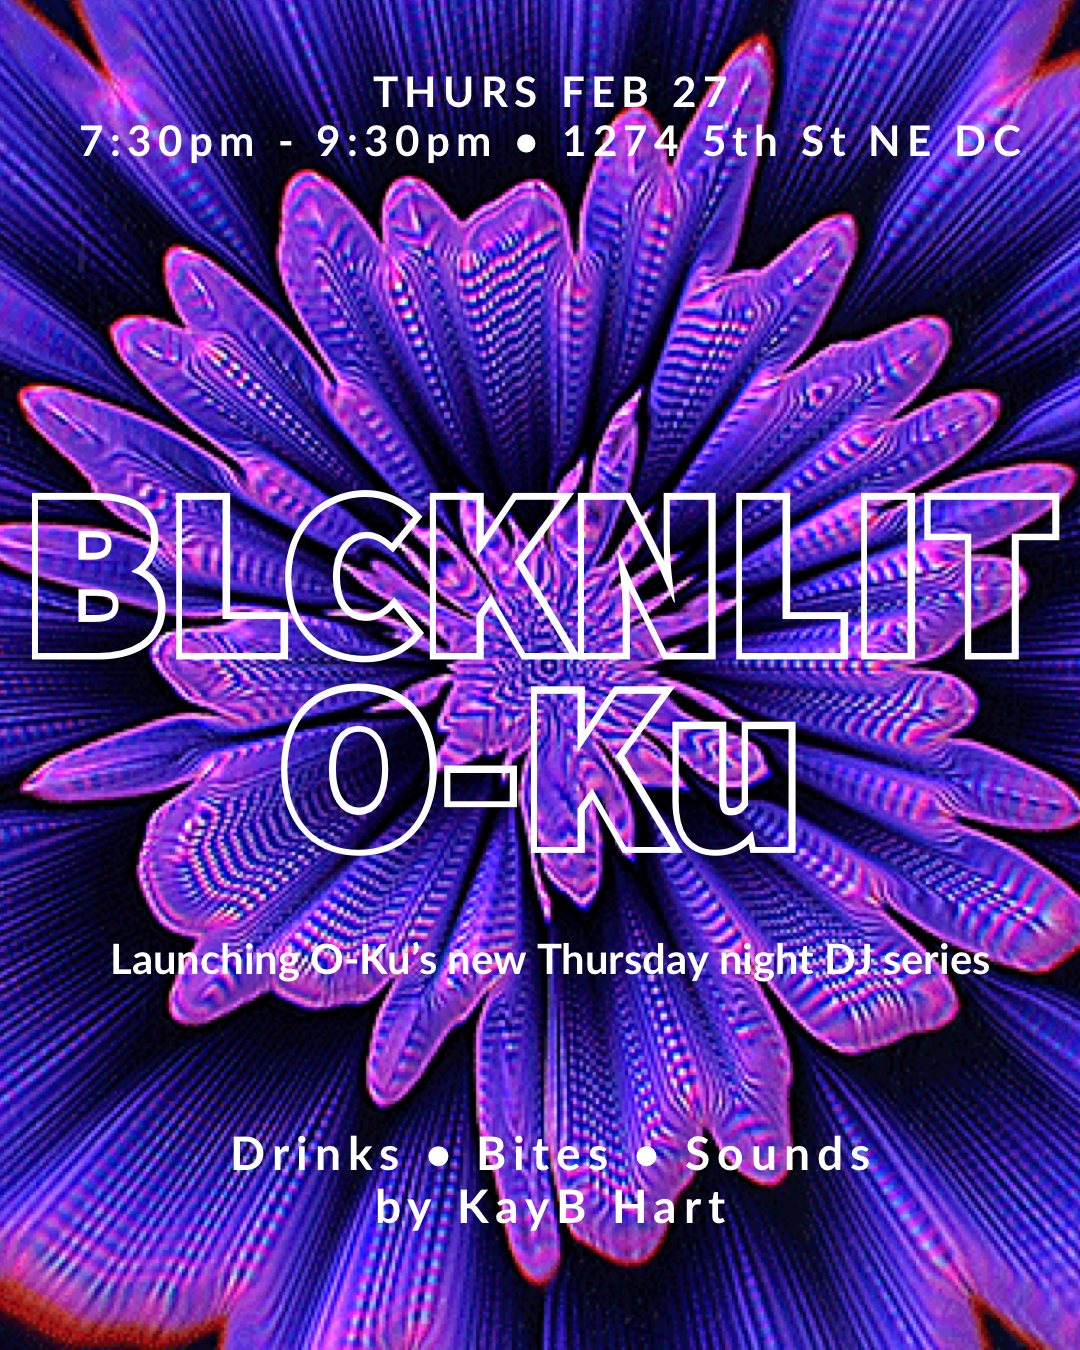 Thursday Night DJ Series Launch at O-Ku with BLCKNLIT